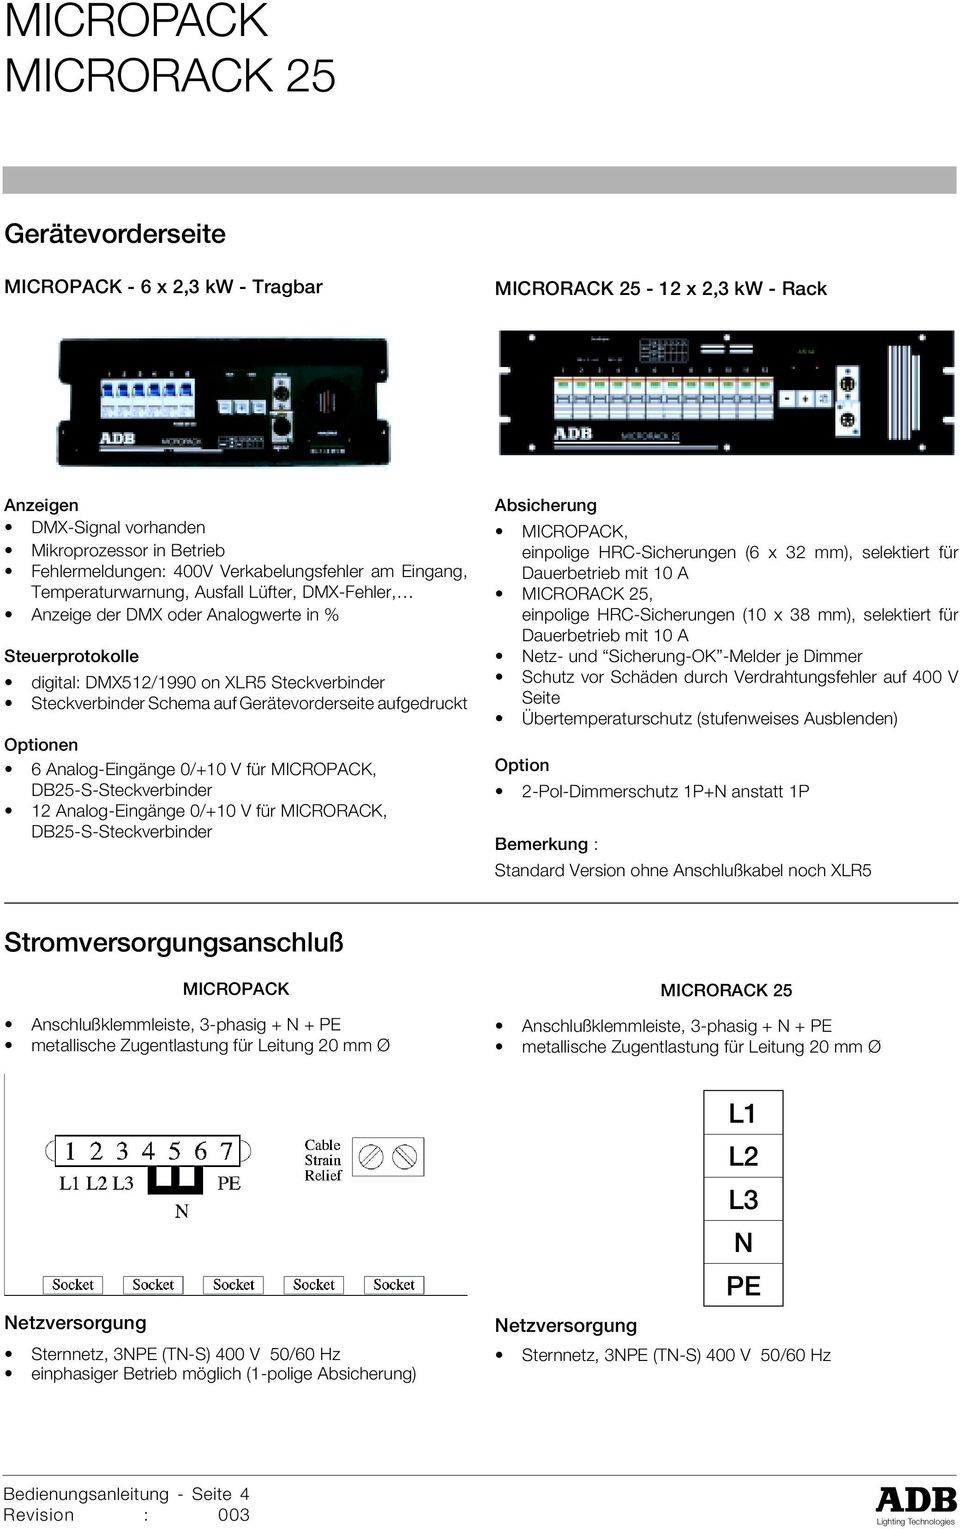 Analog-Eingänge 0/+10 V für MICROPACK, DB25-S-Steckverbinder 12 Analog-Eingänge 0/+10 V für MICRORACK, DB25-S-Steckverbinder Absicherung MICROPACK, einpolige HRC-Sicherungen (6 x 32 mm), selektiert